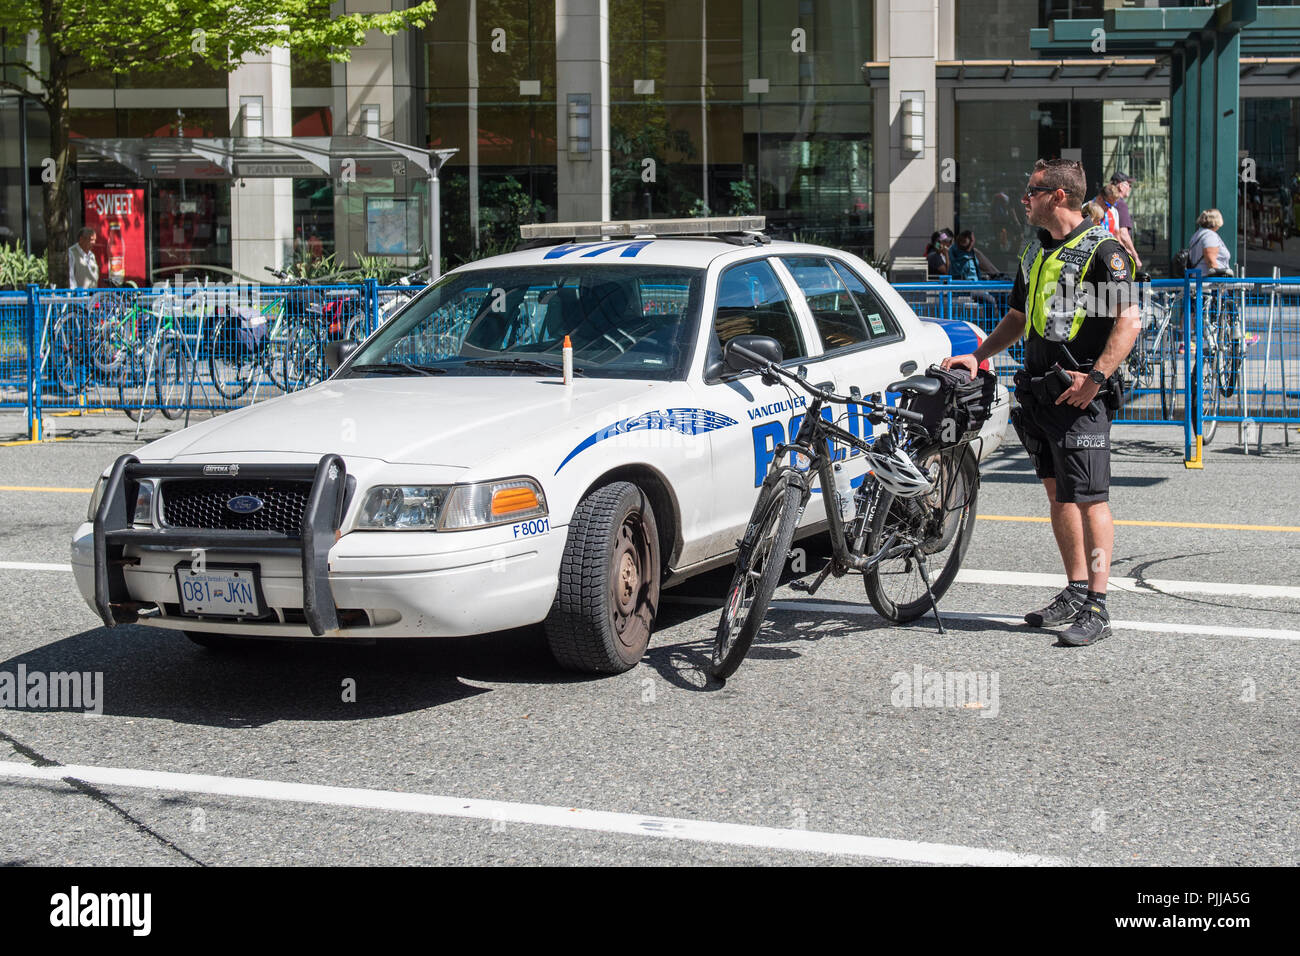 Policier de la ville de Vancouver avec le vélo, et le blocage du véhicule au cours d'une manifestation de rue, ville de Vancouver. Banque D'Images